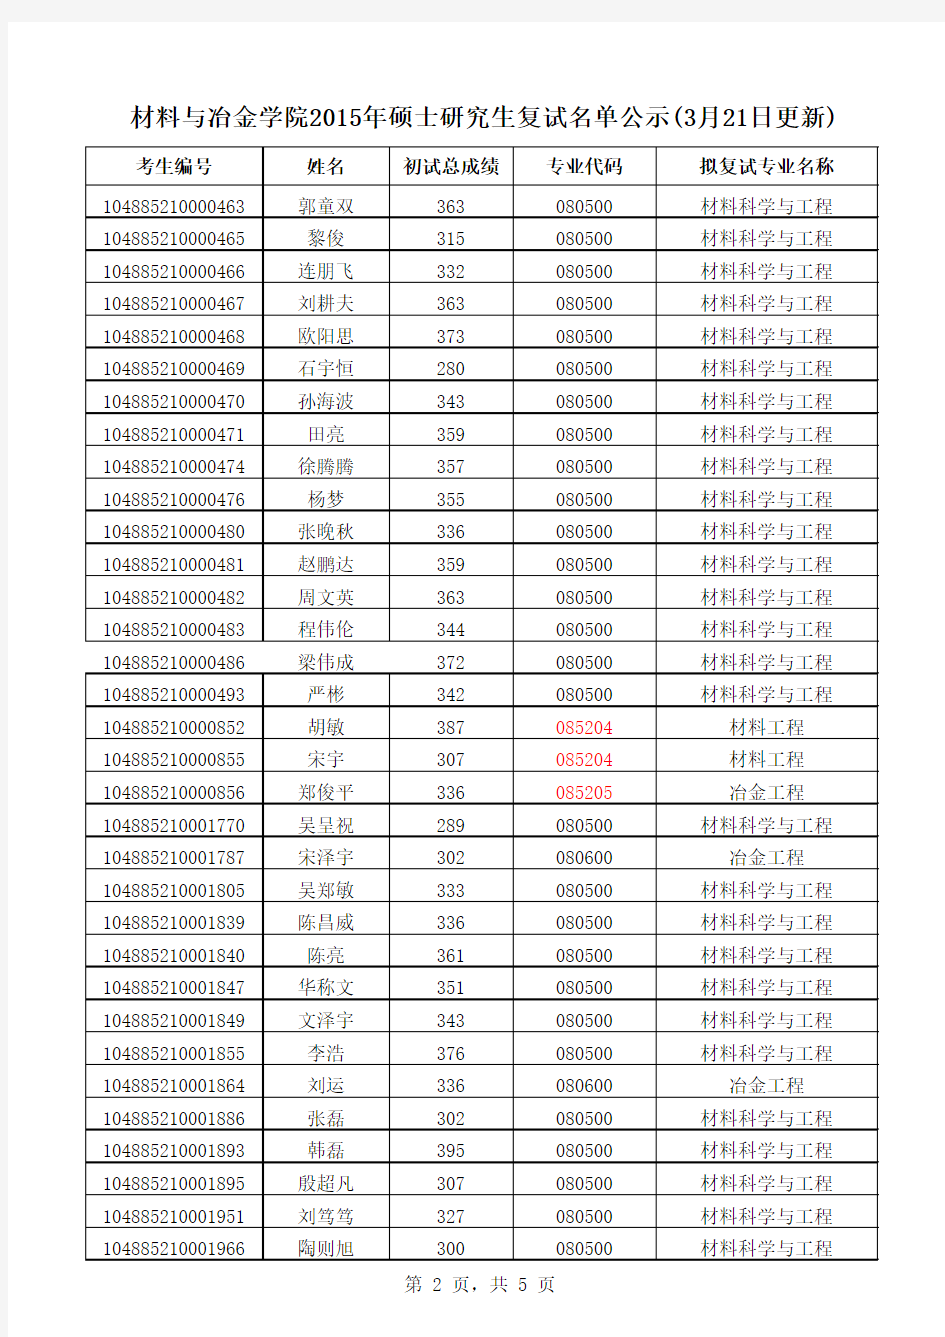 武汉科技大学2015级研究生名单